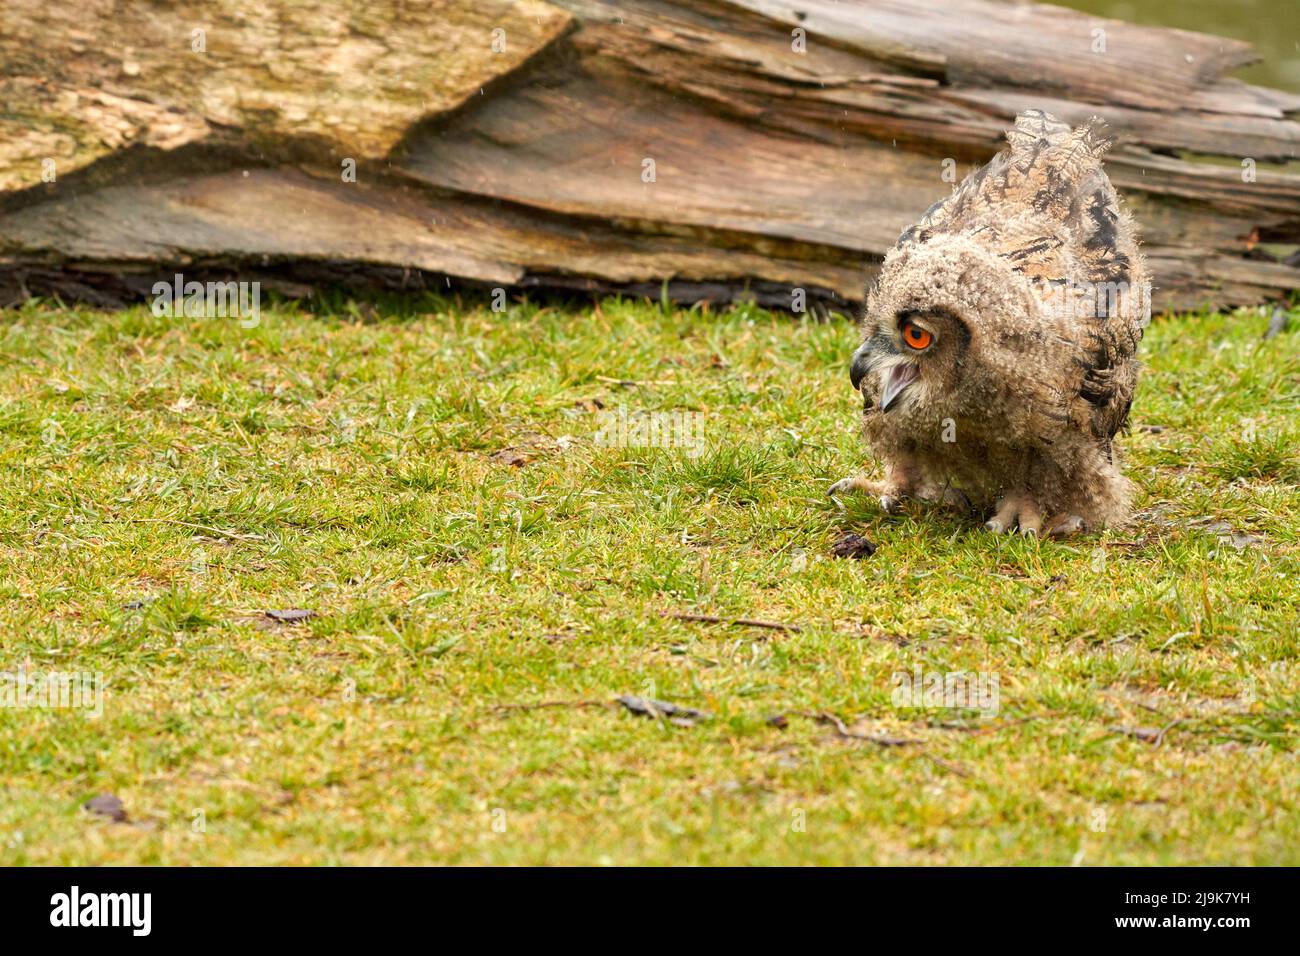 La chouette de l'aigle eurasien sauvage marche à l'extérieur devant un tronc d'arbre sous la pluie.Oiseau de proie de six semaines aux yeux rouges. Pluie, gouttes de pluie temps pluvieux. Banque D'Images